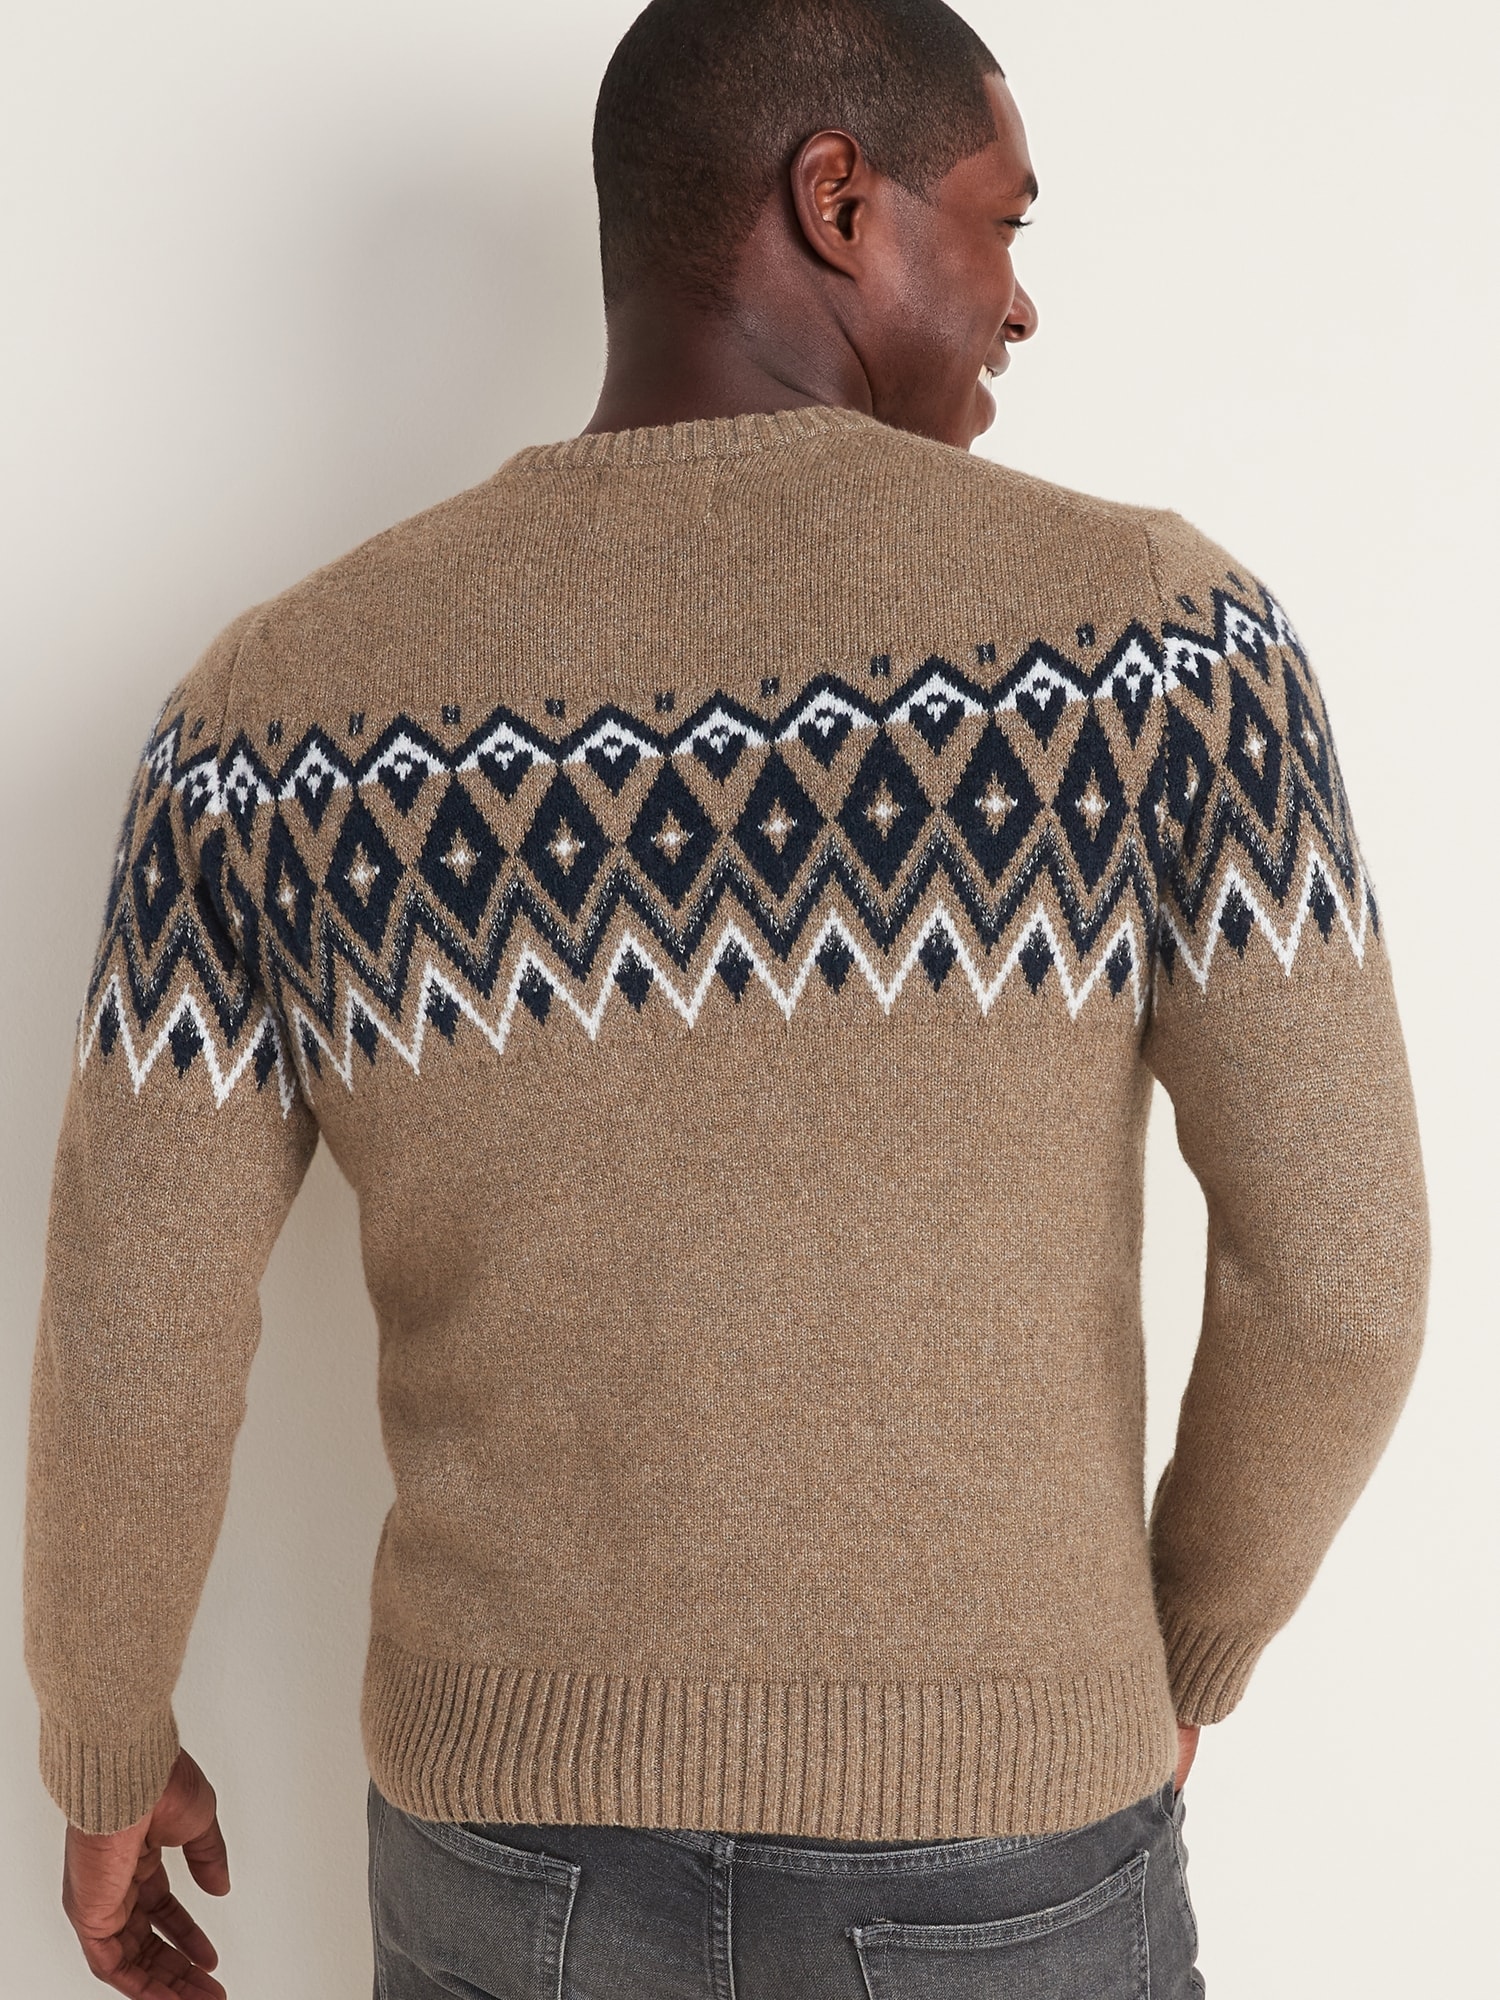 gap fair isle sweater